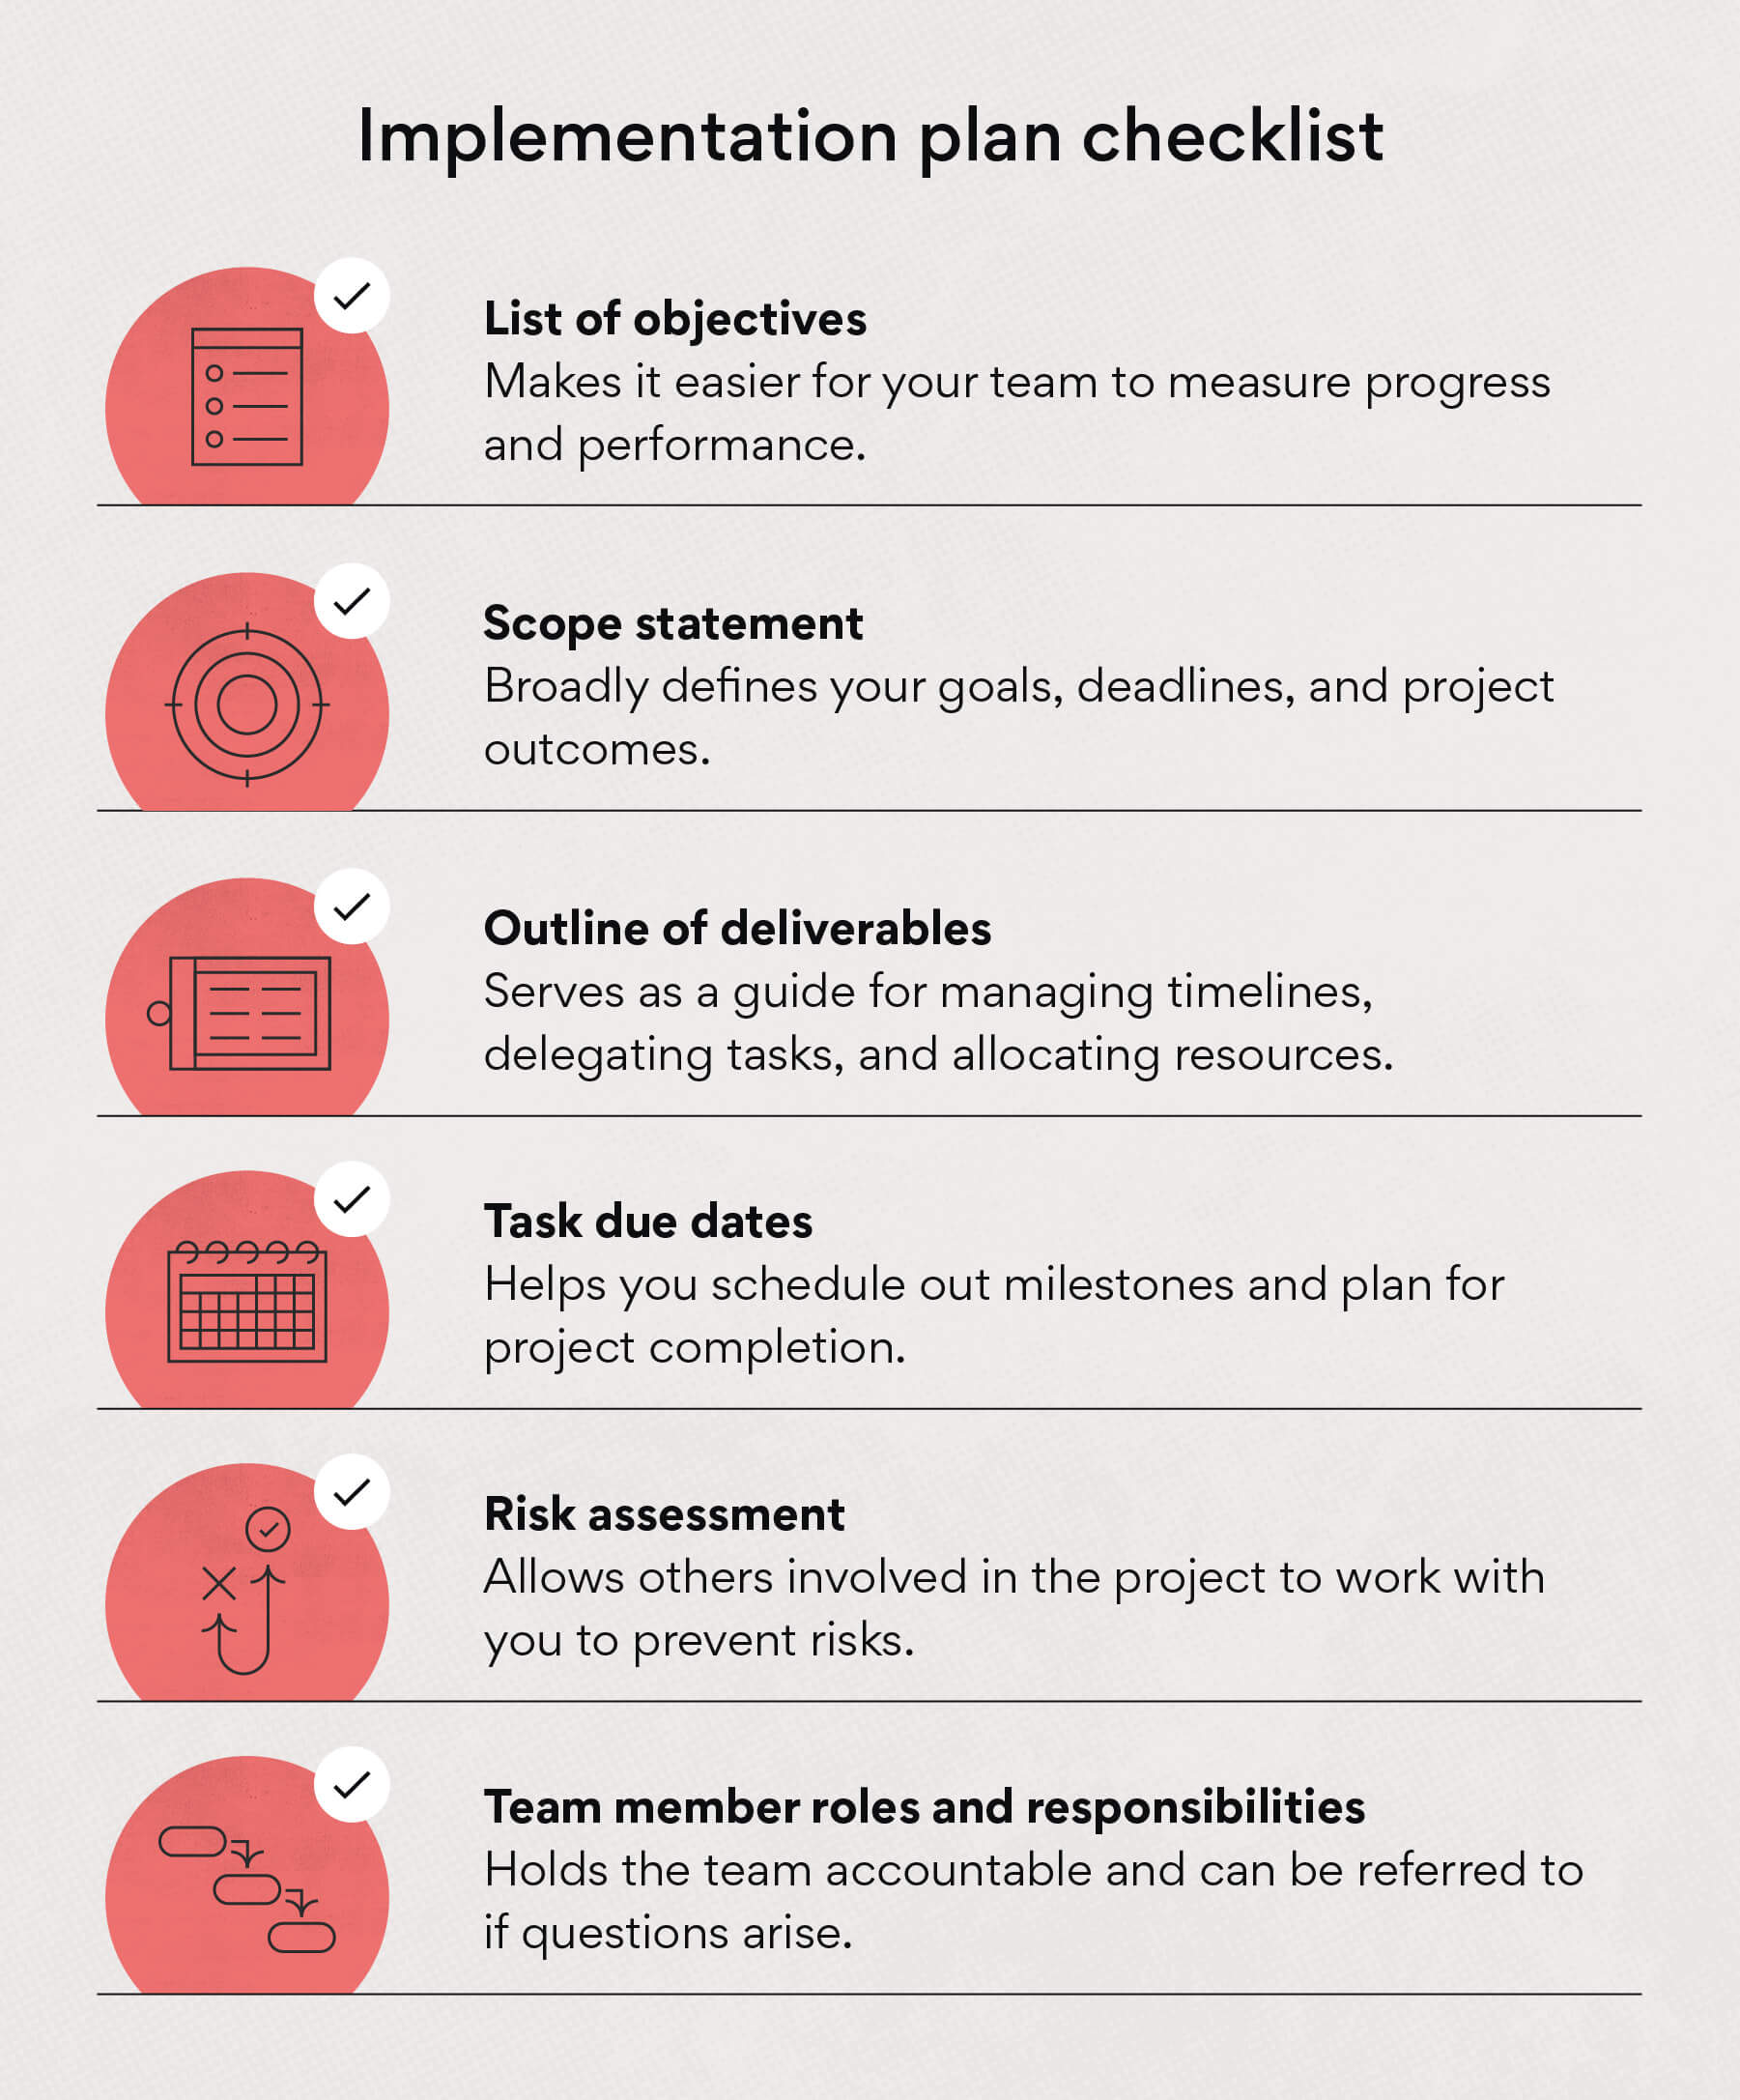 Implementation plan checklist